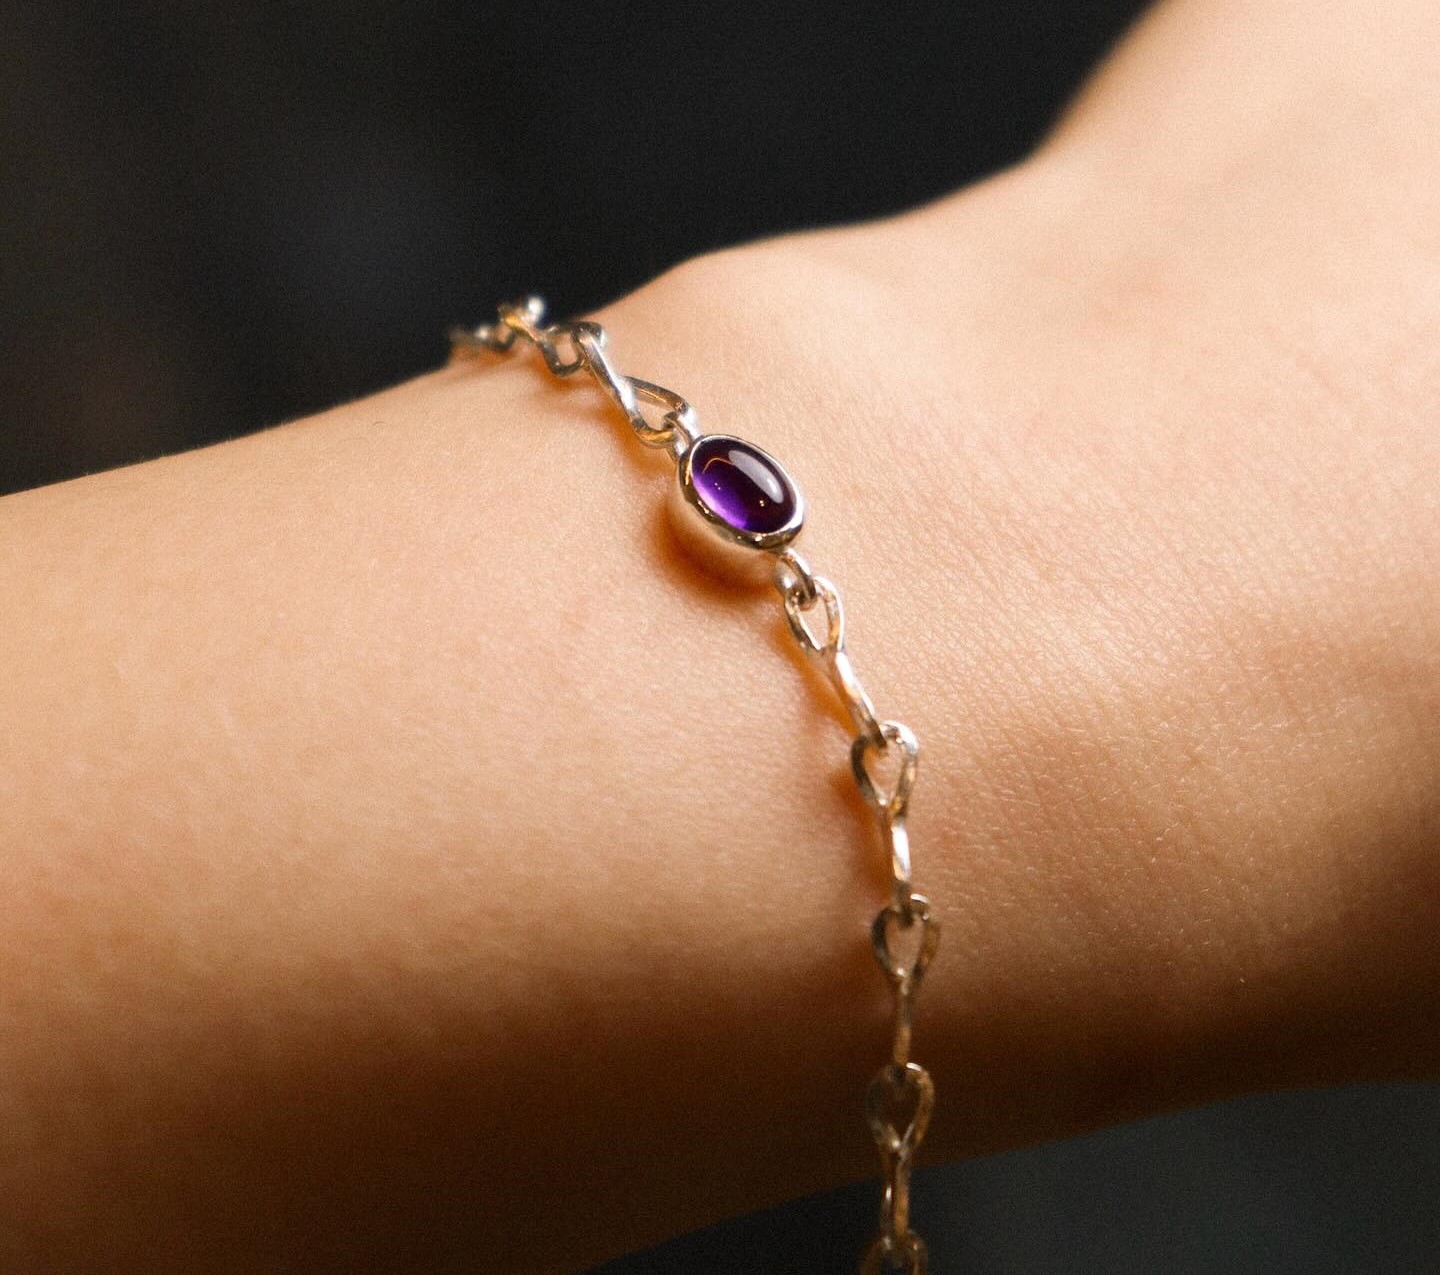 A woman wears a purple birthstone bracelet